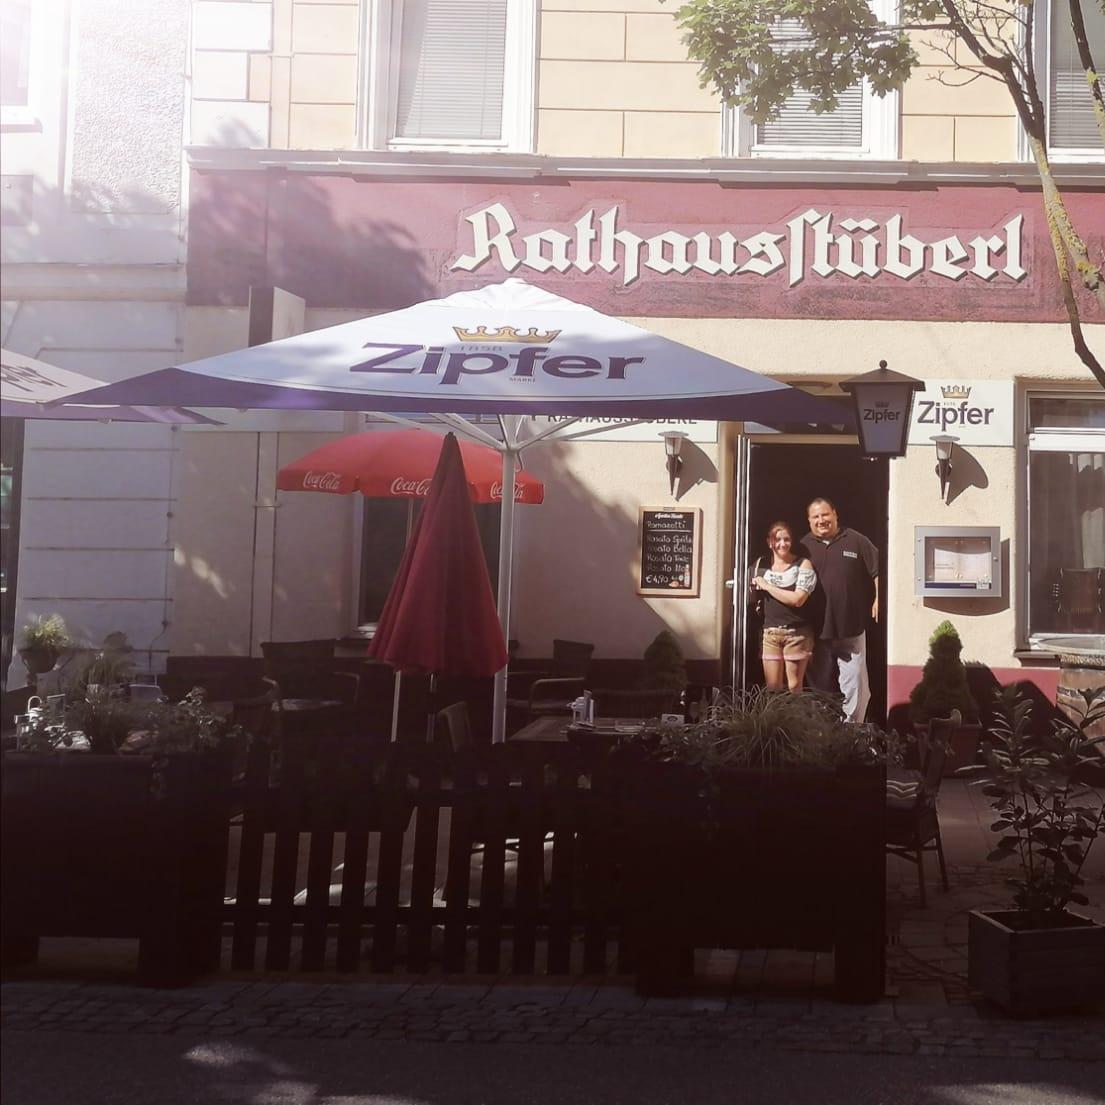 Restaurant "Rathausstüberl" in Bad Hall